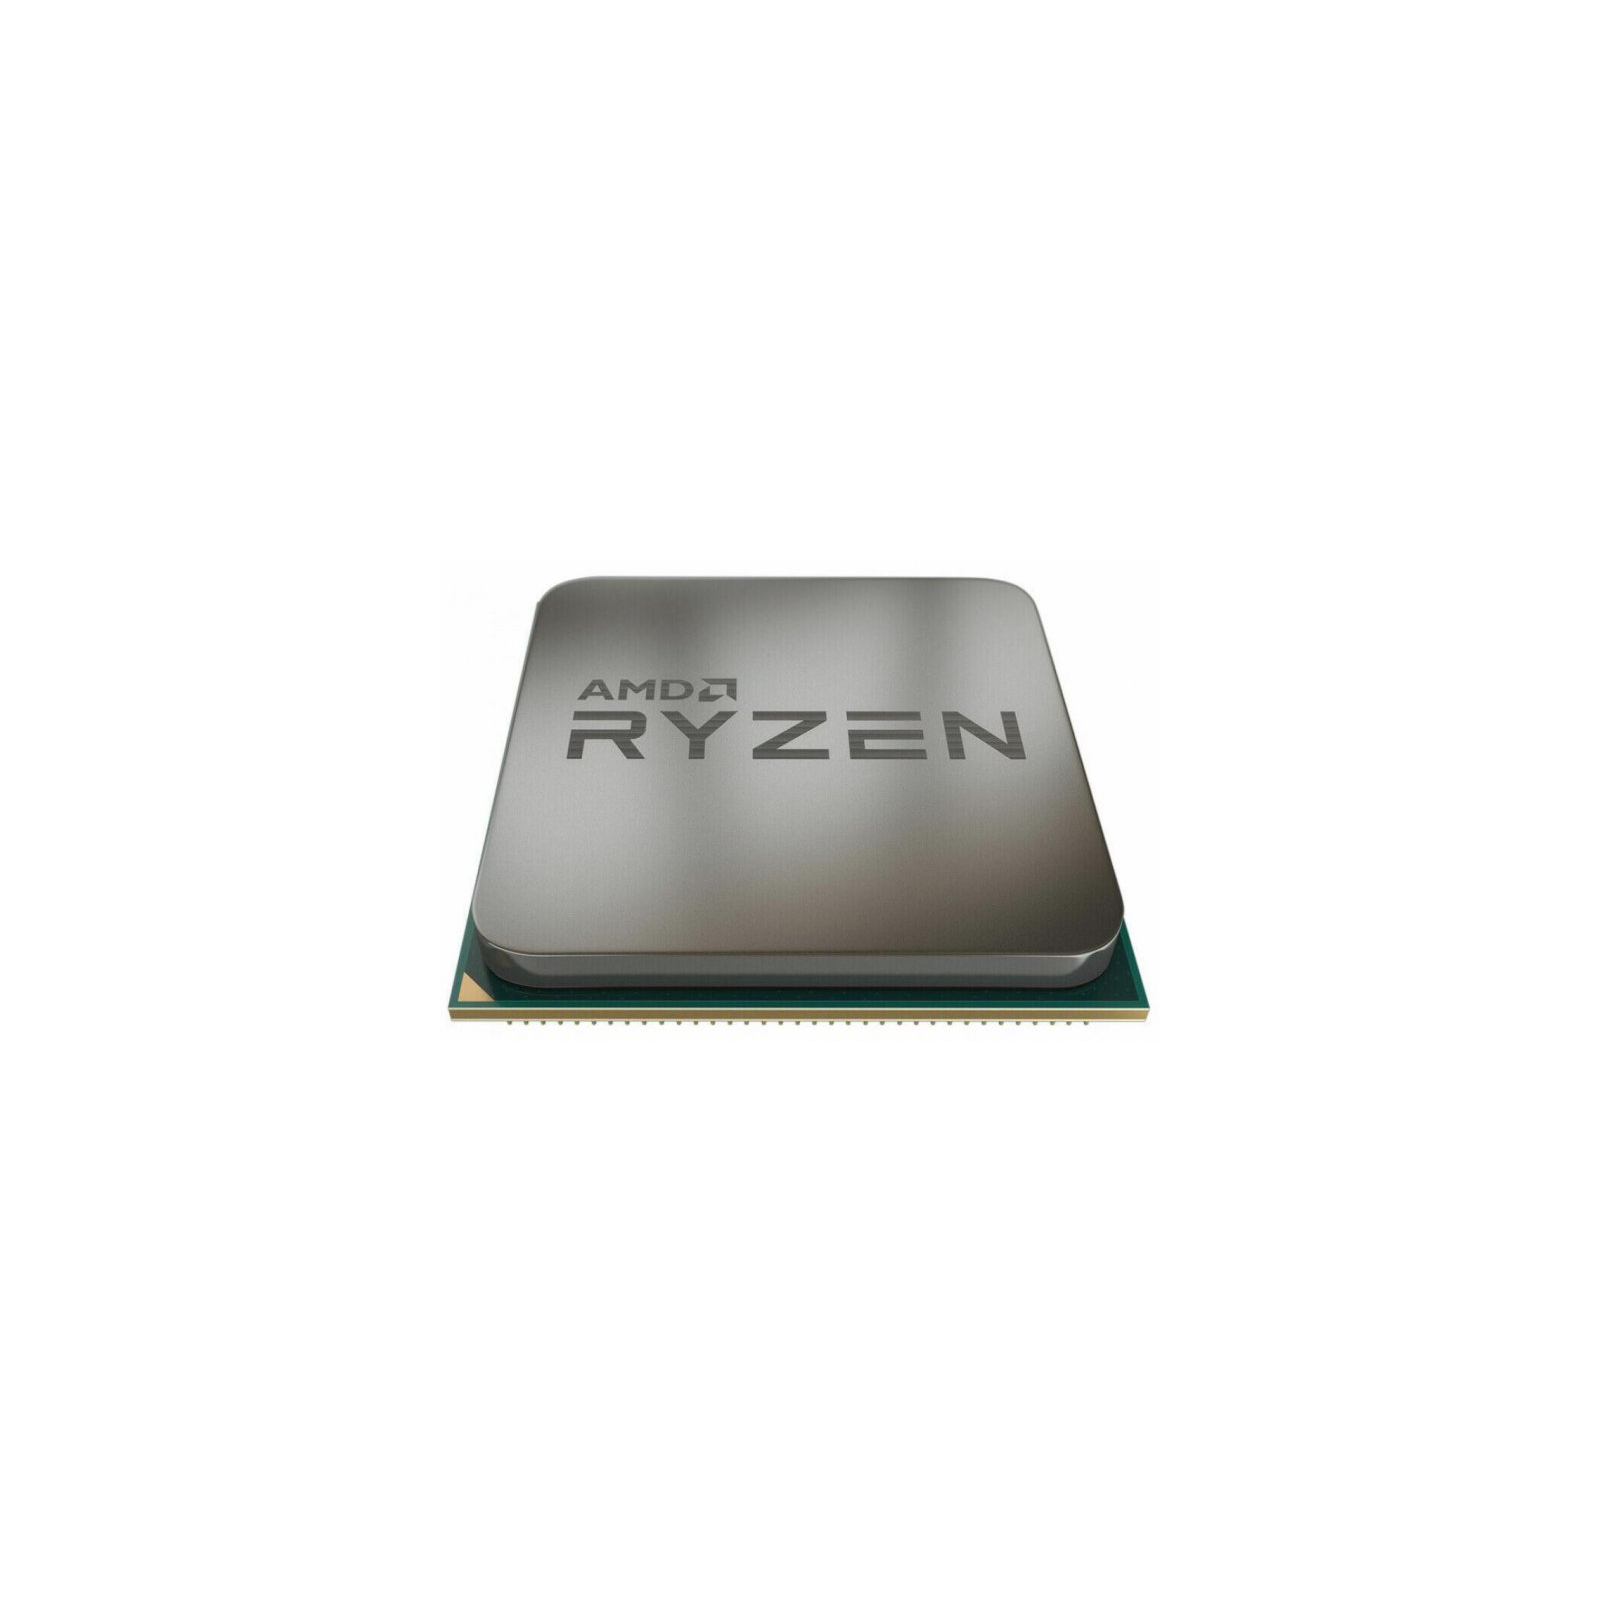 Процессор AMD Ryzen 7 1800X (YD180XBCM88AE)